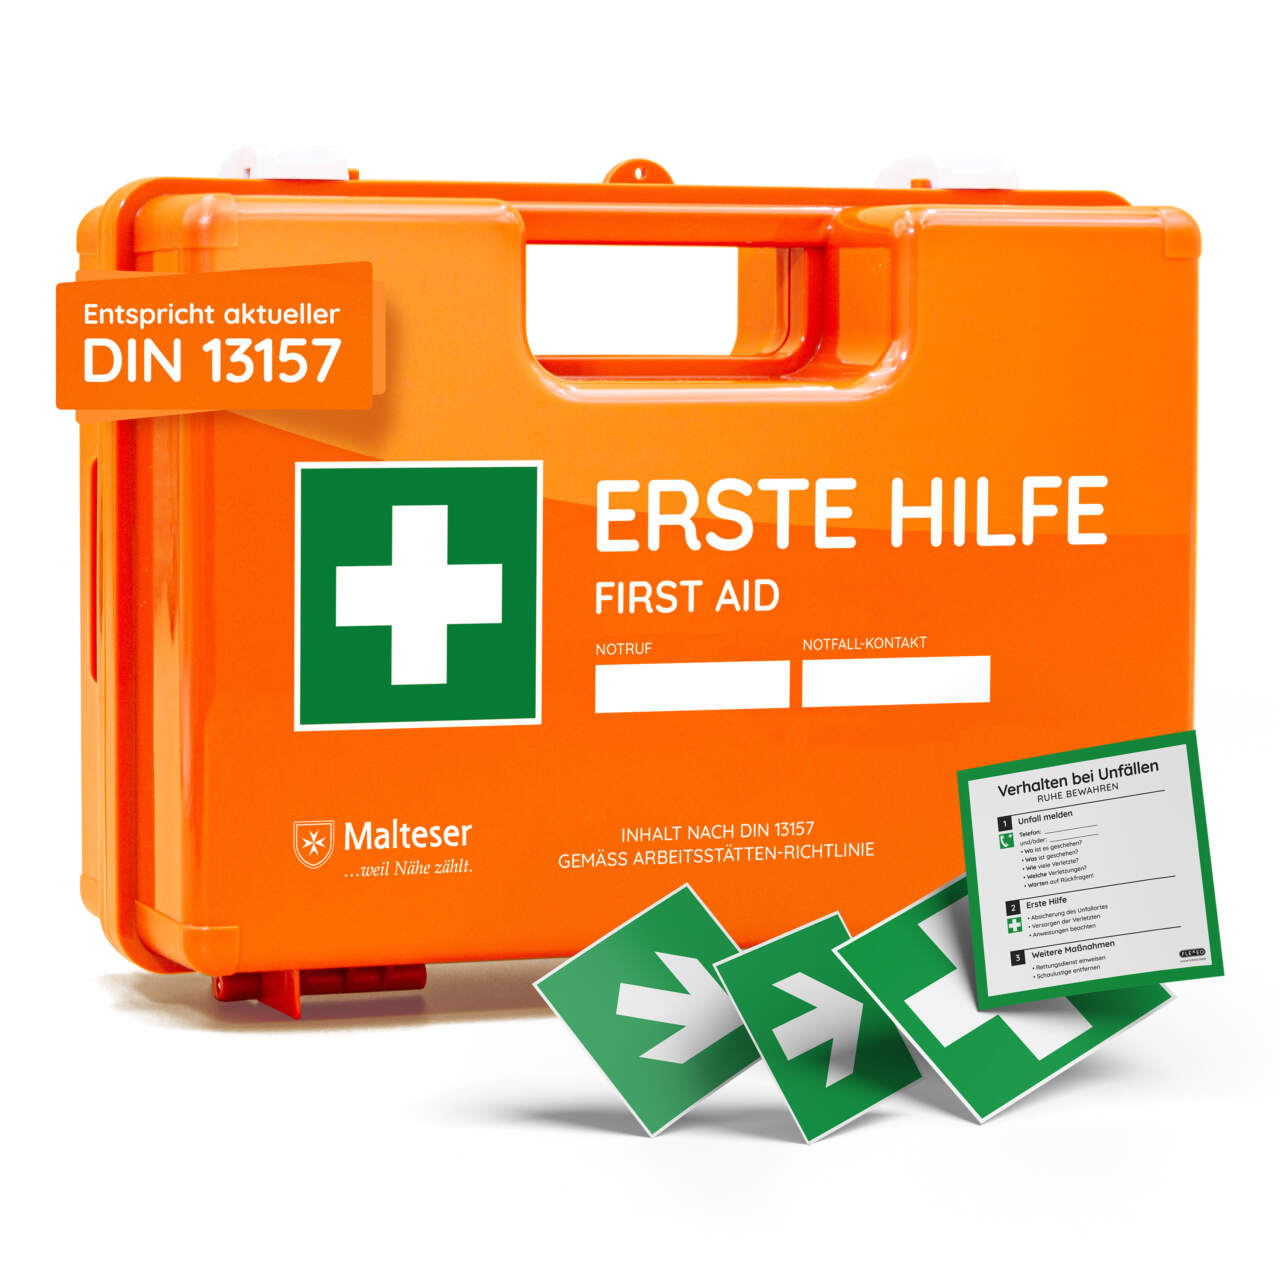 Erste-Hilfe-Ausrüstung schnell griffbereit halten: Verbandskasten benötigt  Updates - Bretten